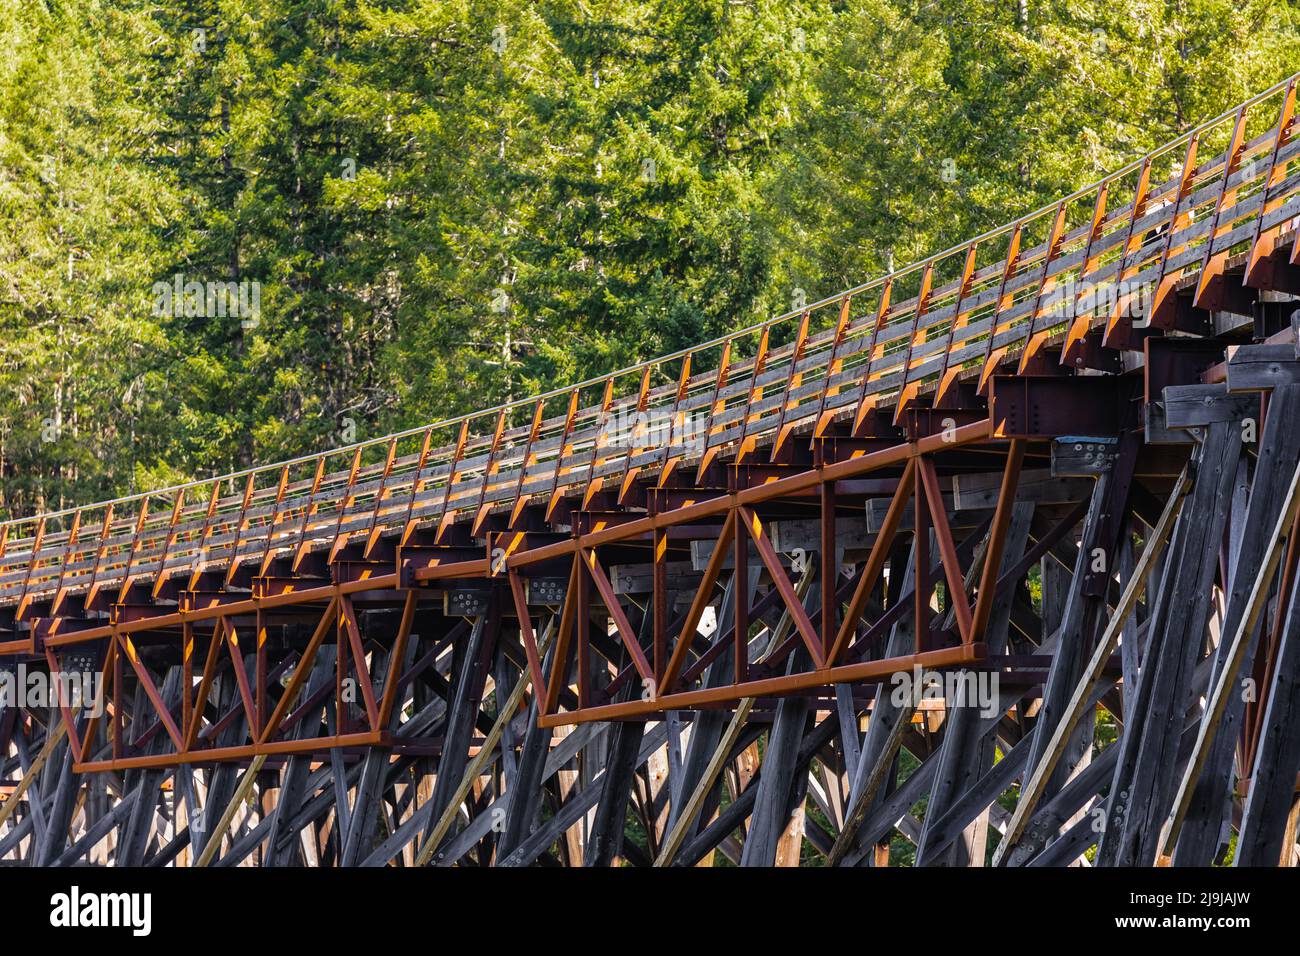 Vue sur le pont de chemin de fer en bois Kinsol Trestle, sur l'île de Vancouver, en Colombie-Britannique, au Canada. Photo de voyage, personne, mise au point sélective Banque D'Images